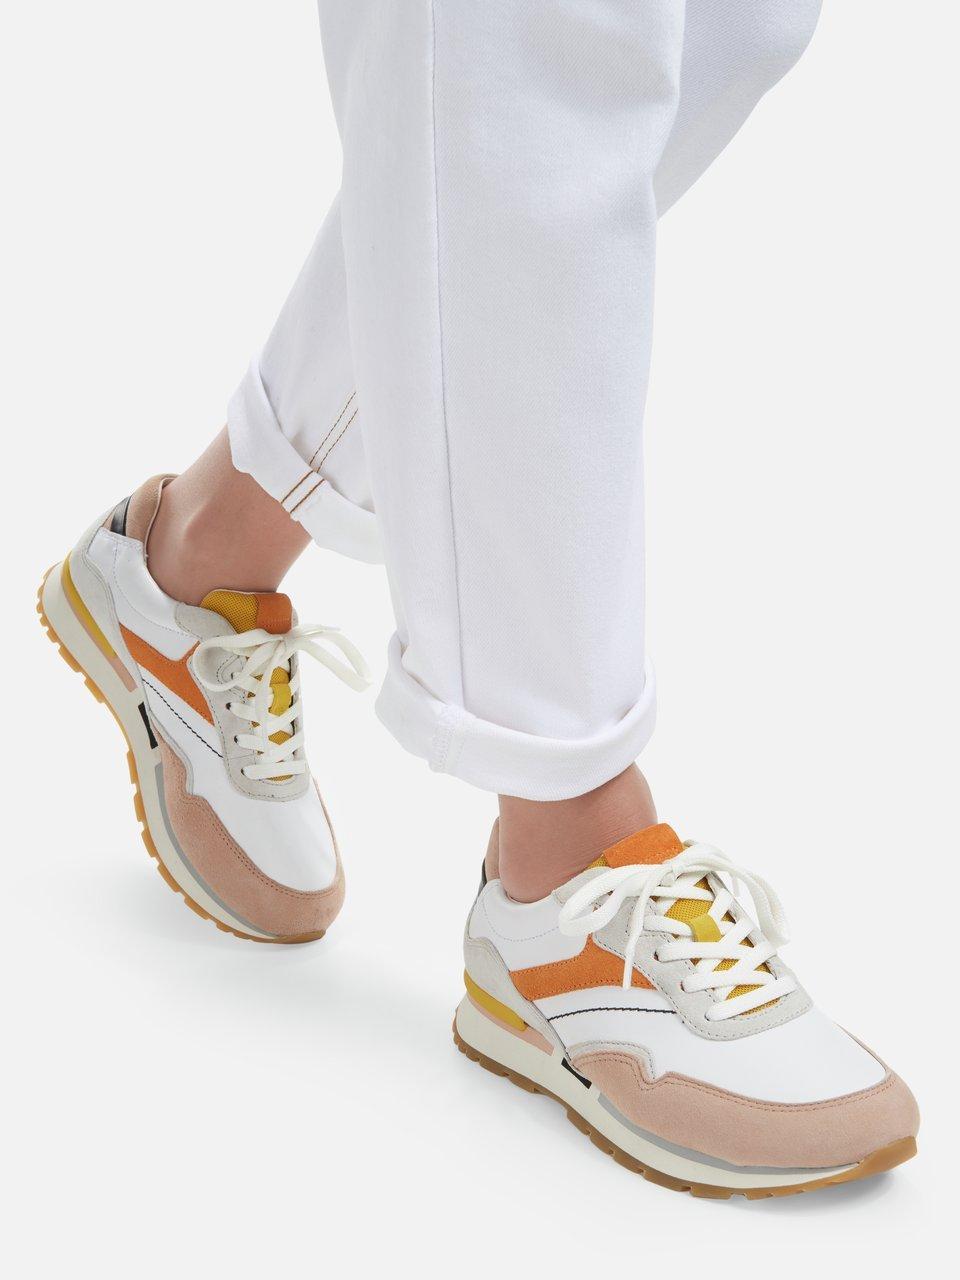 Neerduwen overal schaal Gabor Comfort - Sneakers van kalfsnappa en suède - wit/multicolour